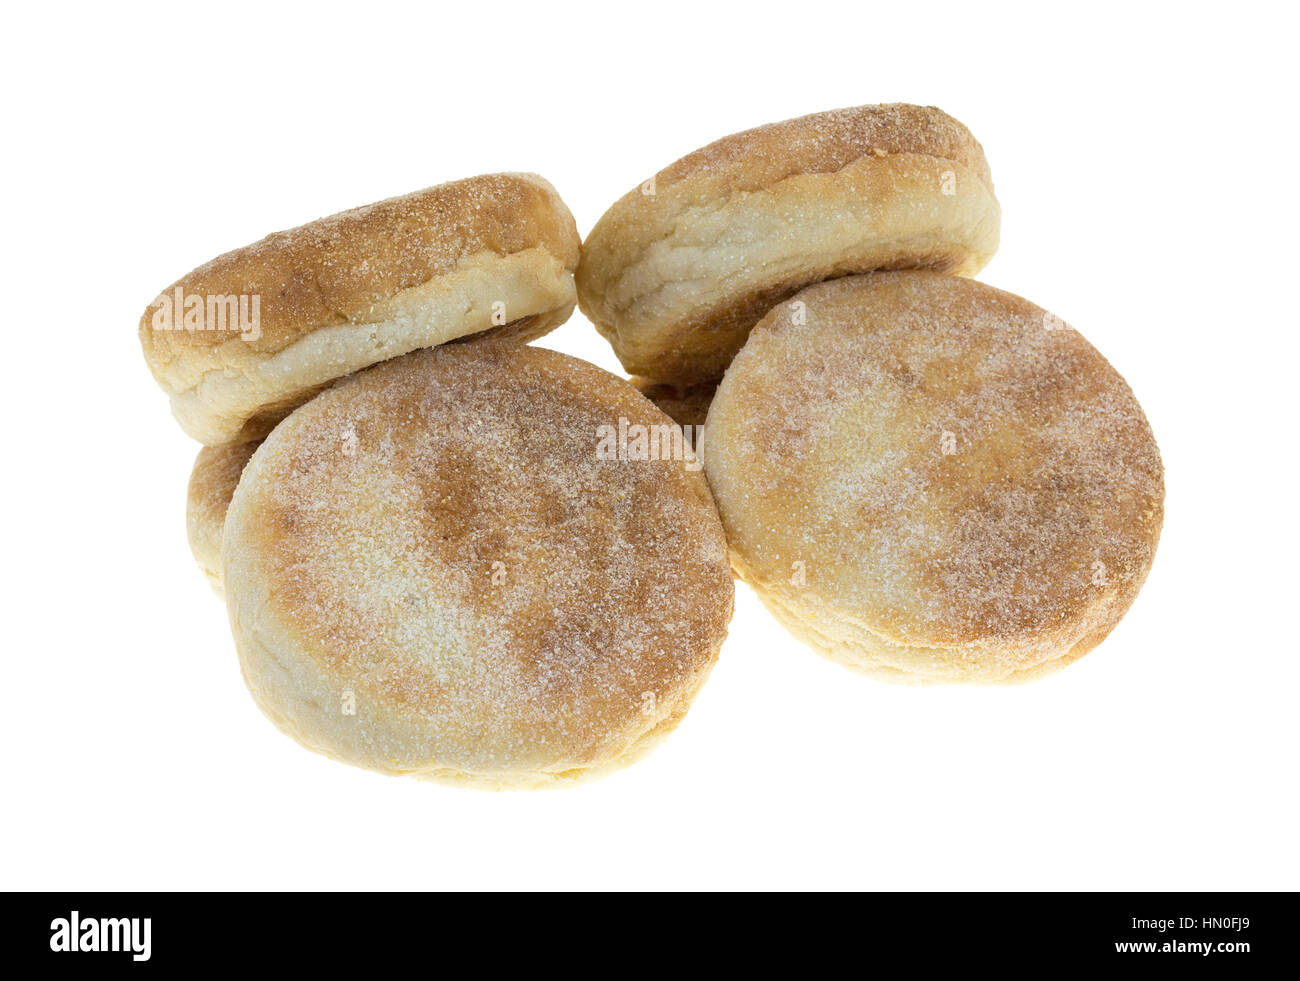 Appena sfornato muffin inglese isolato su uno sfondo bianco. Foto Stock